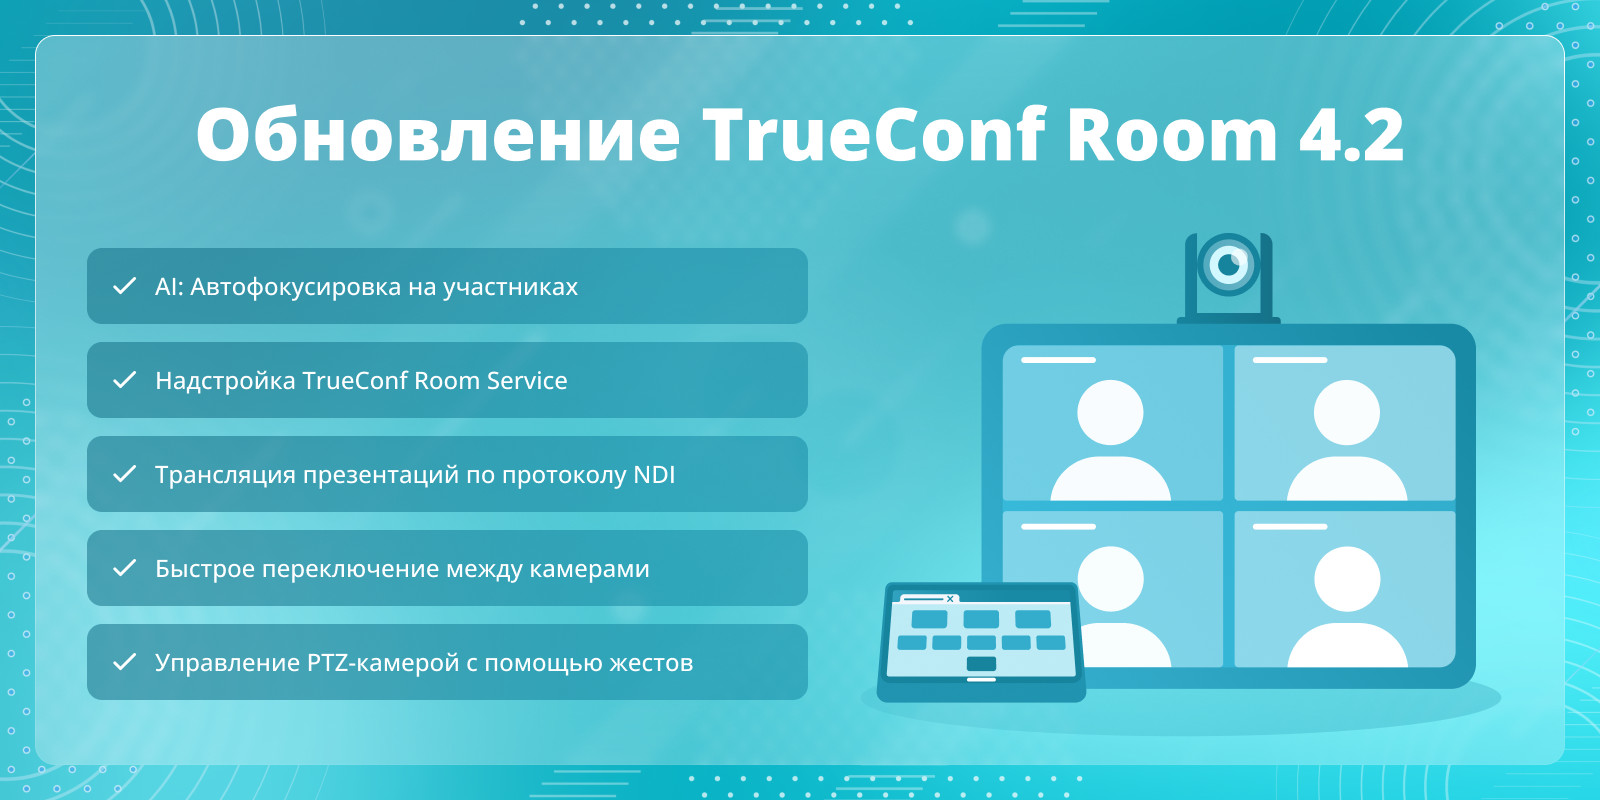 Обновление TrueConf Room 4.2: Надстройка TrueConf Room Service и автофокусировка на участниках 1